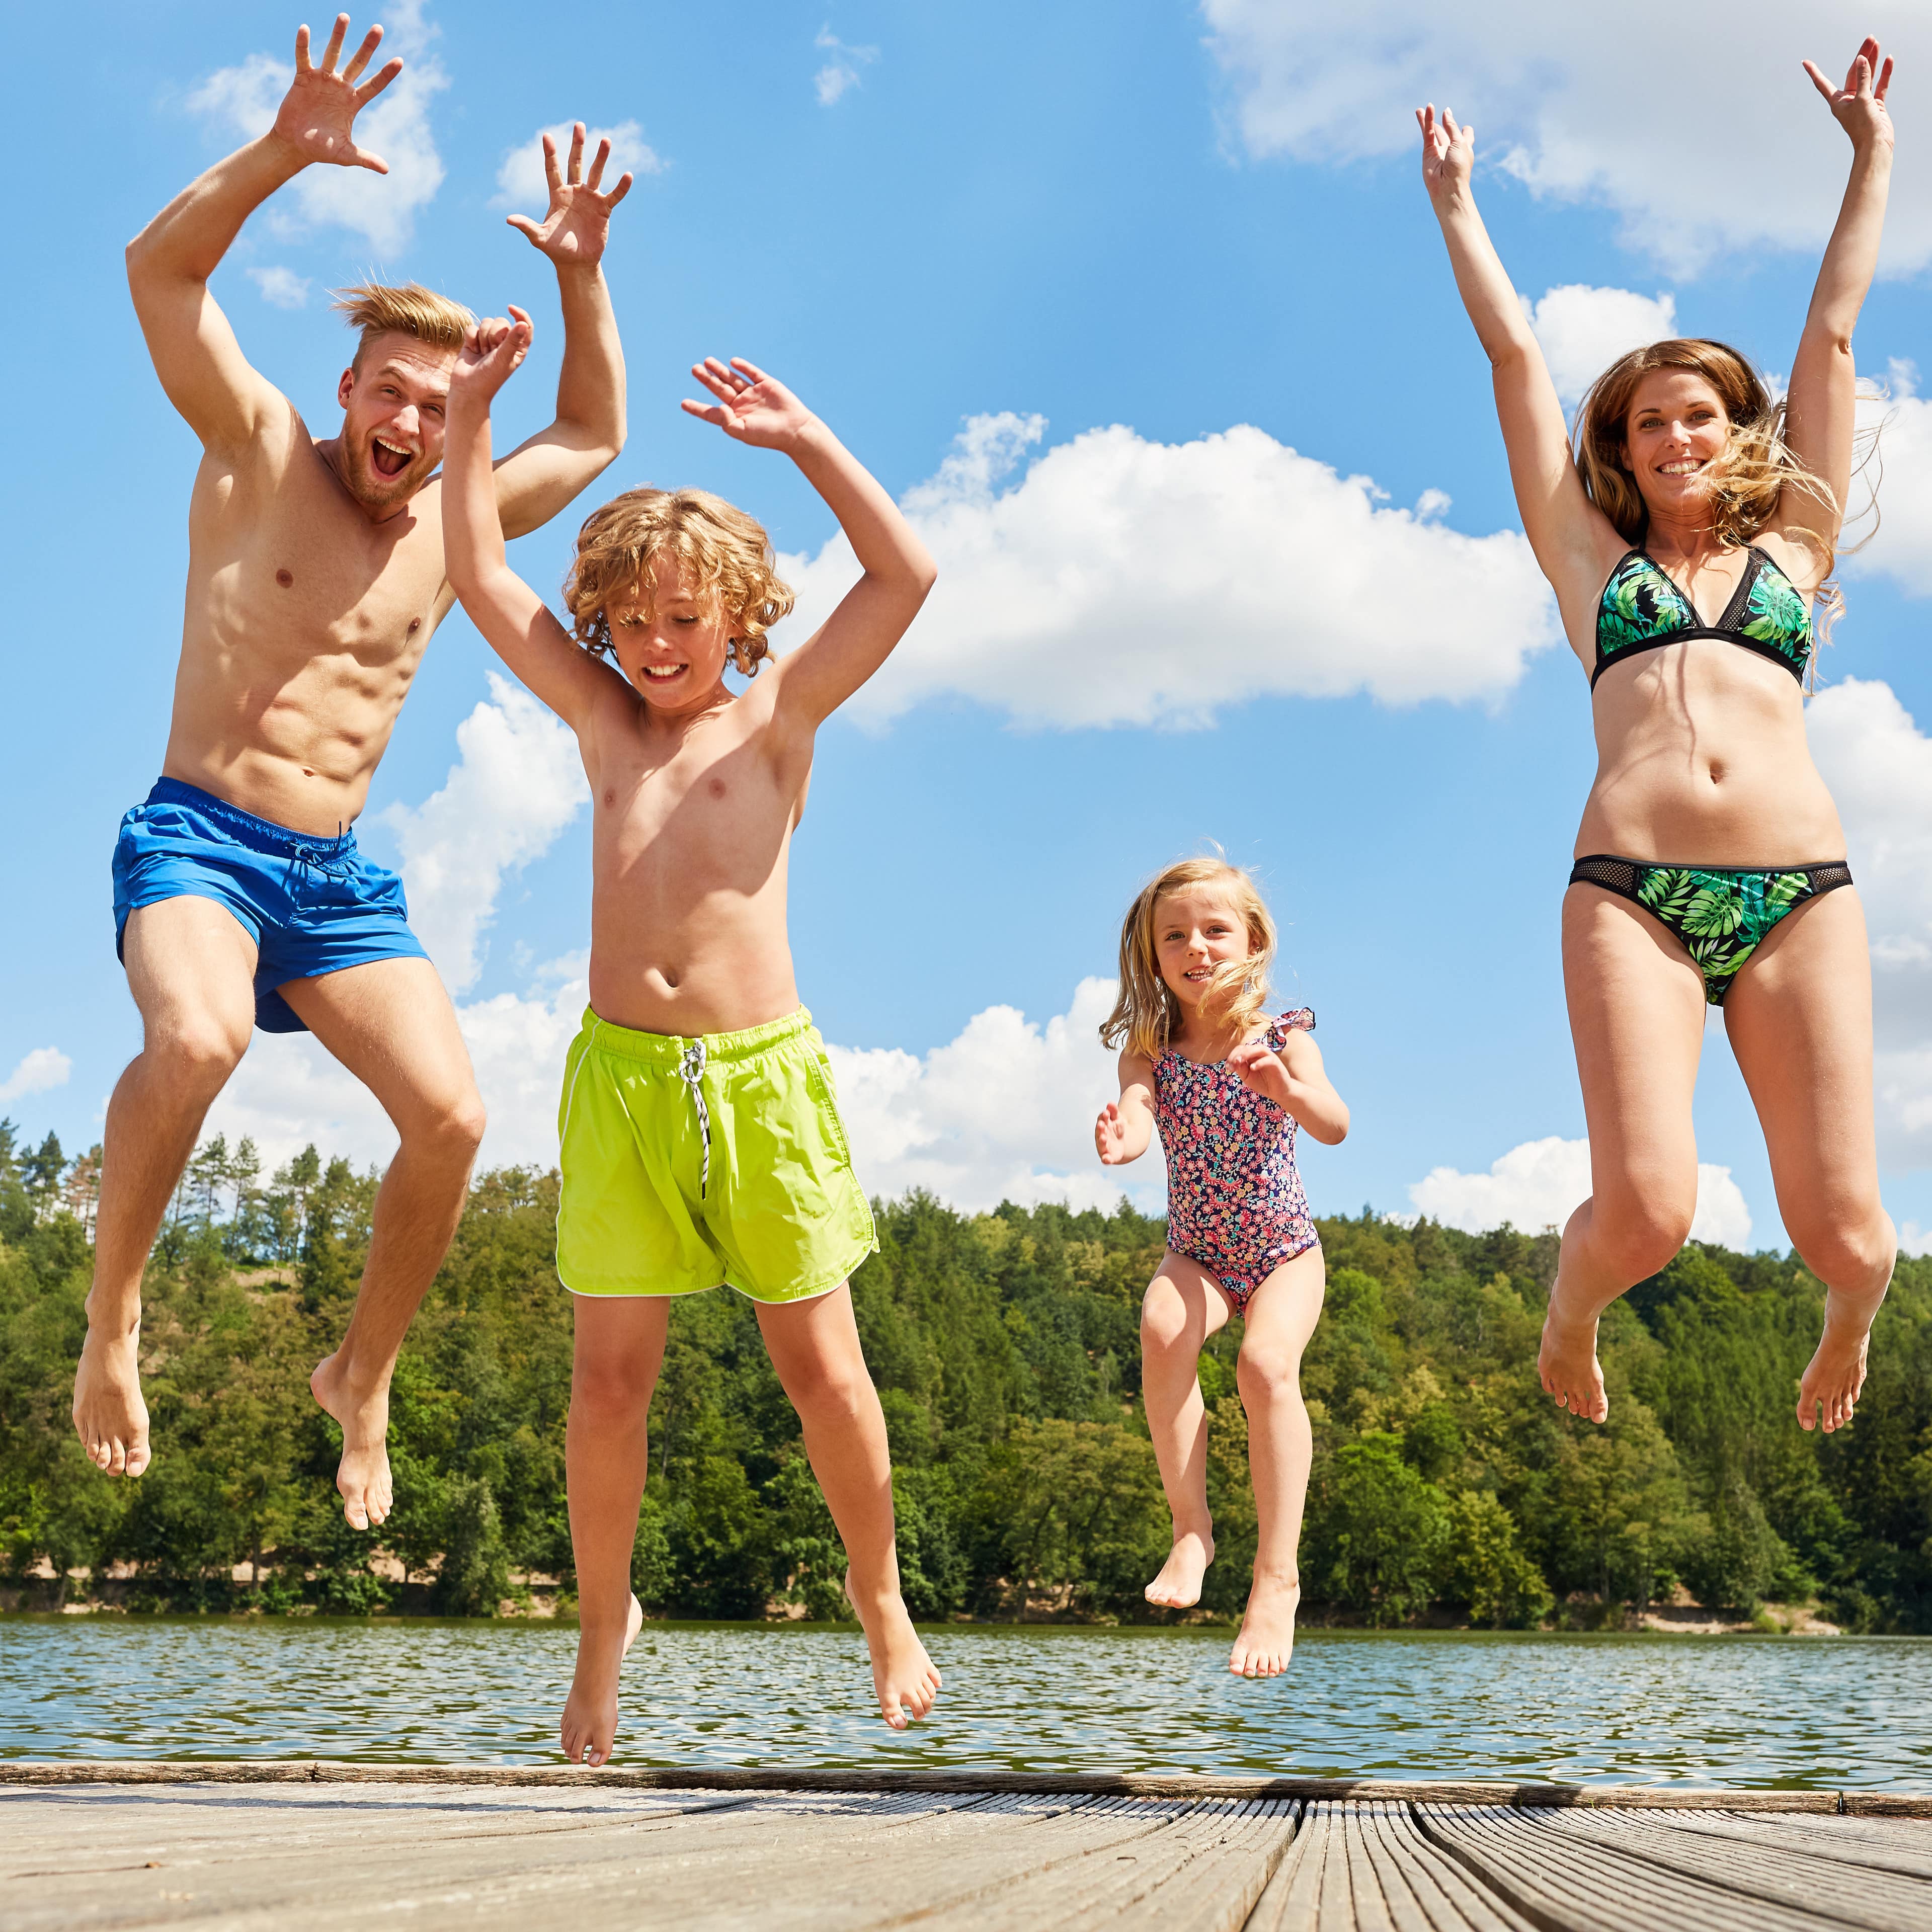 Familie mit 2 Kindern in Badekleidung springt auf einem Badesteg in die Luft.